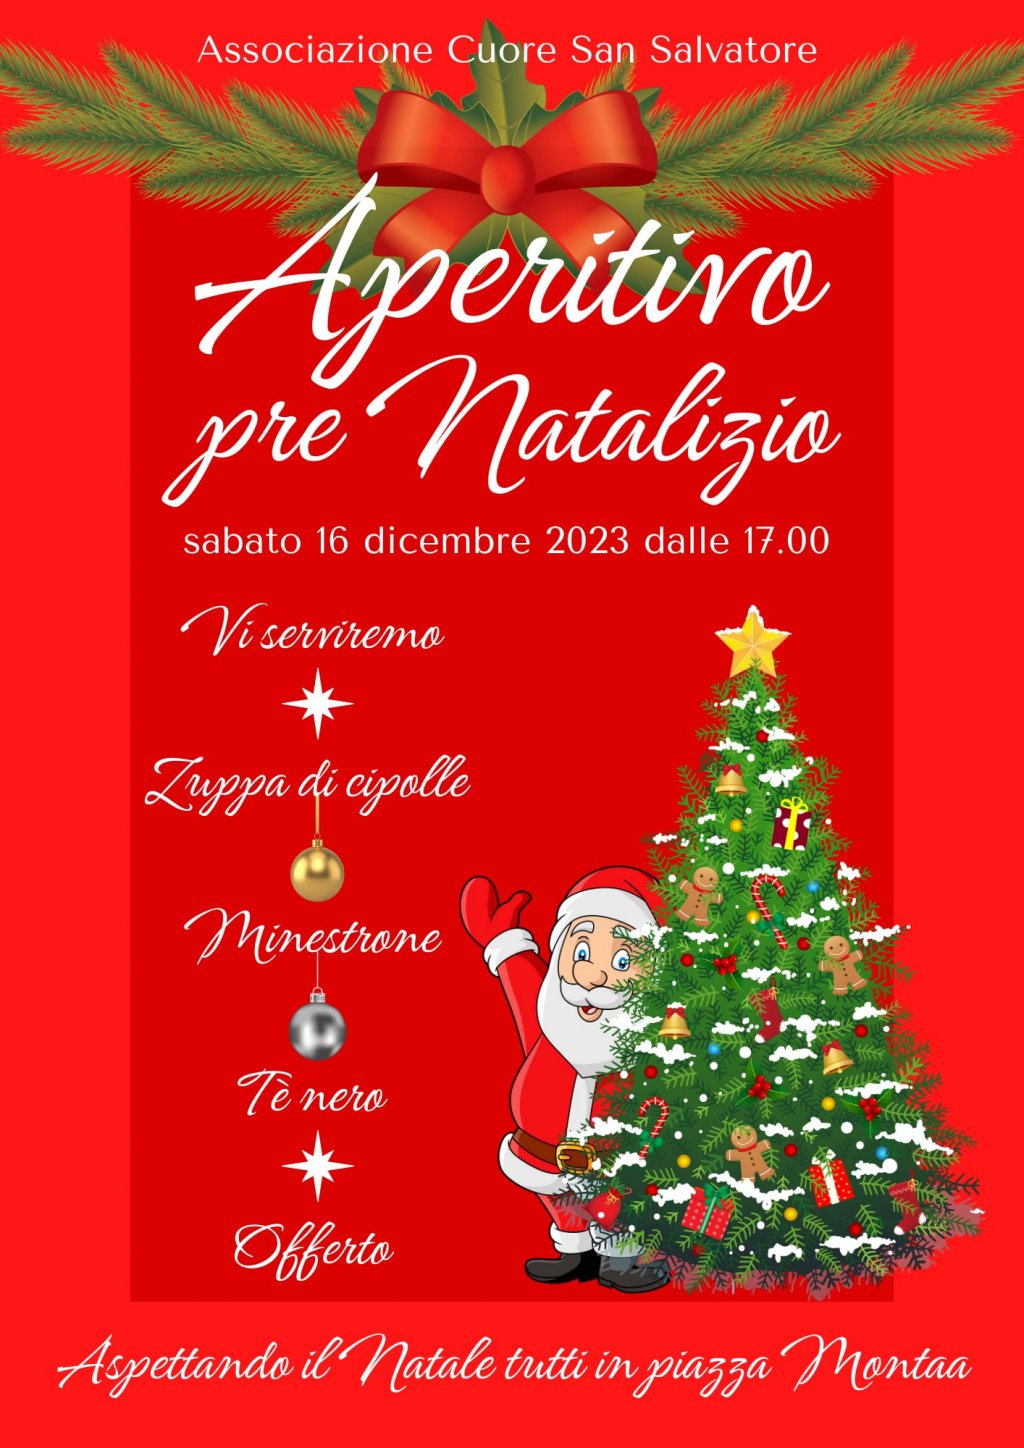 image-10168919-Aperitivo_pre_natalizio_Albero_verde-c51ce.png